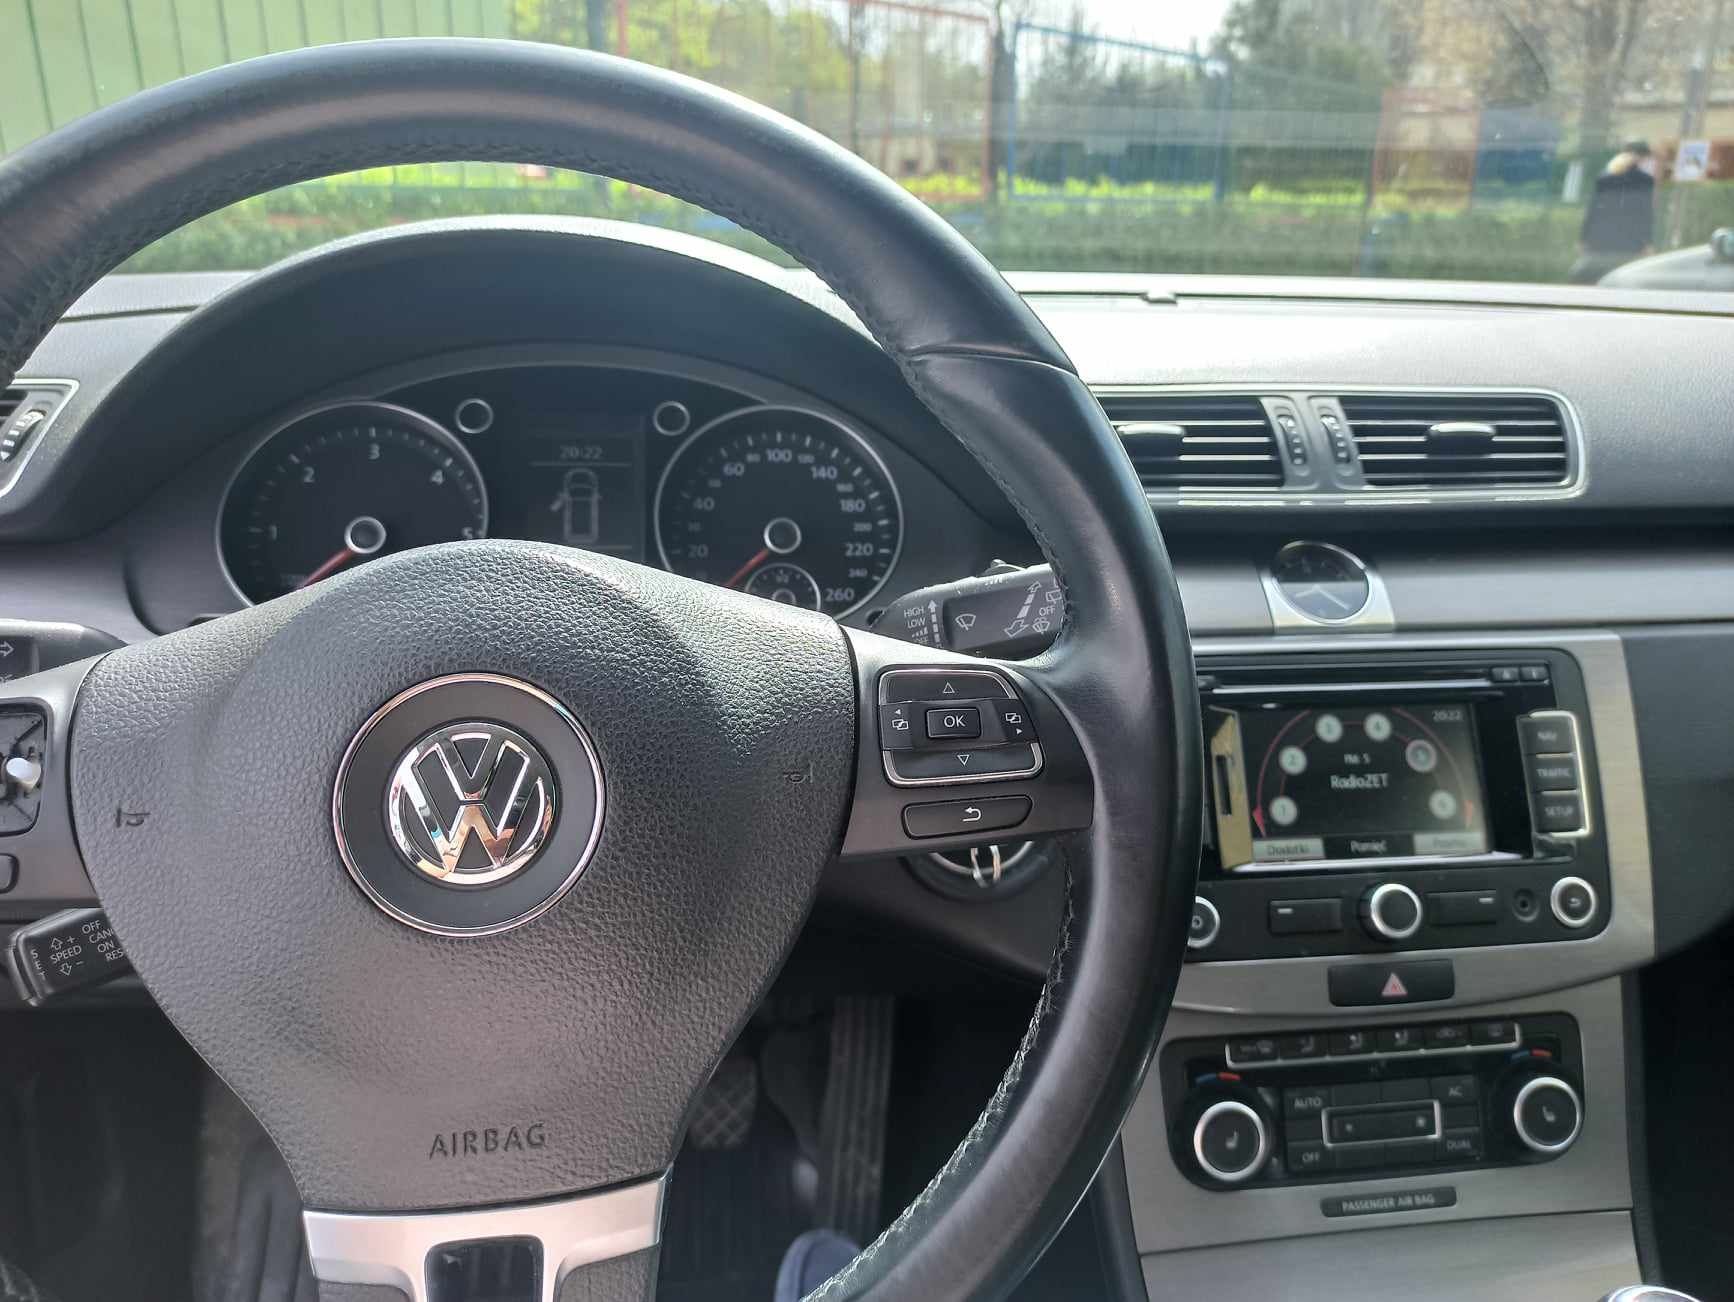 Volkswagen passat B7